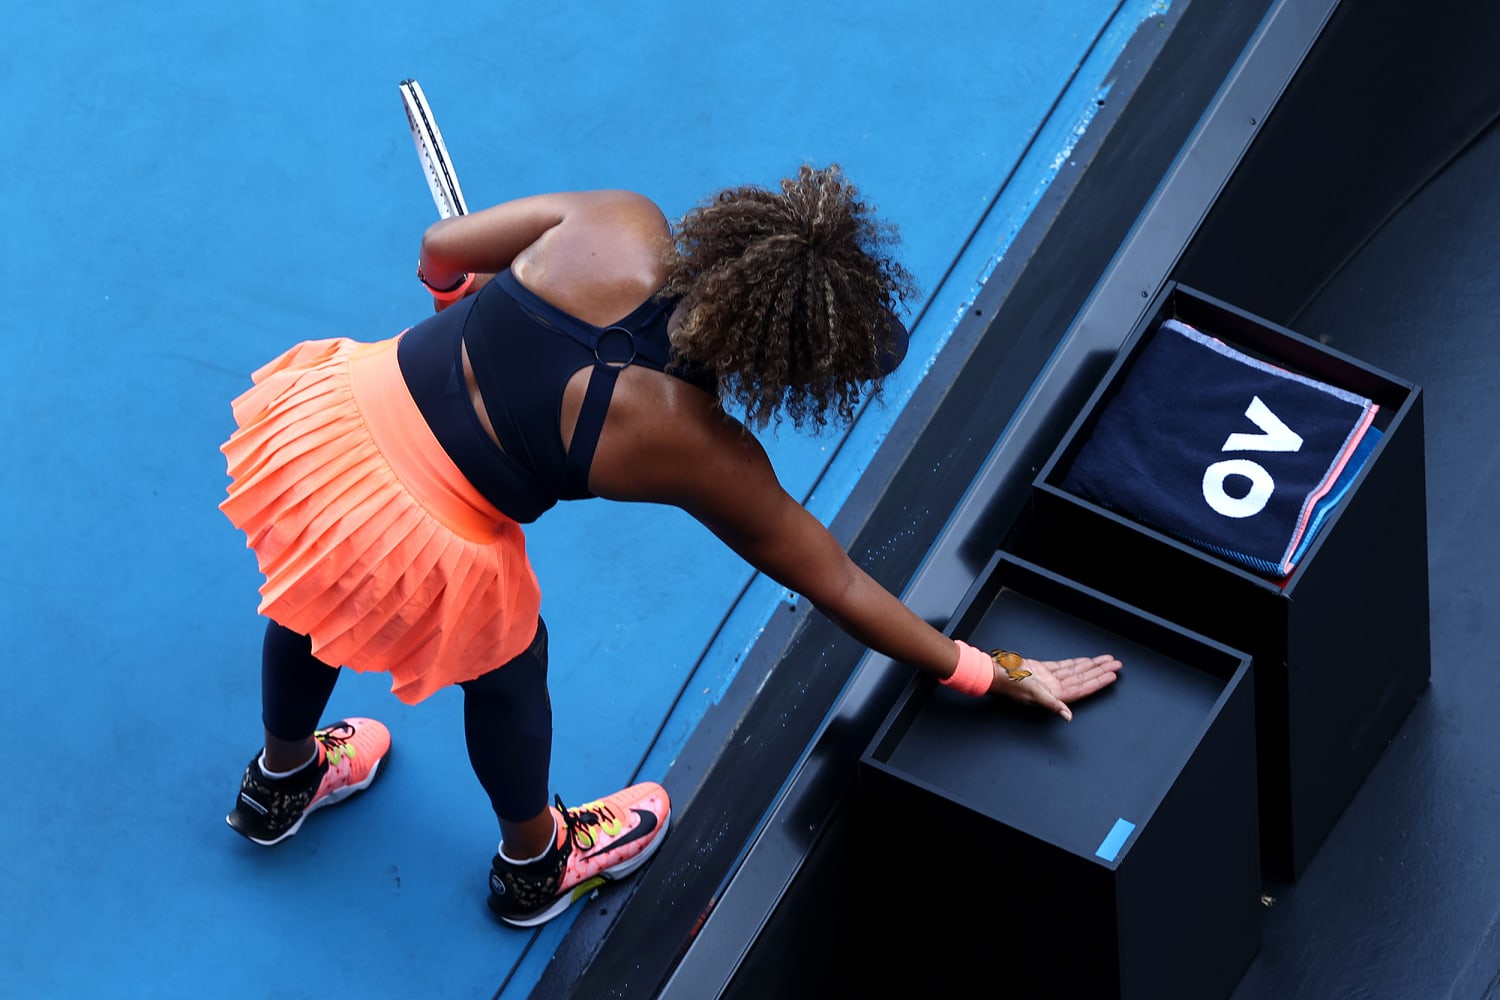 Naomi Osaka Wears Butterfly Shoes at 2022 Australian Open